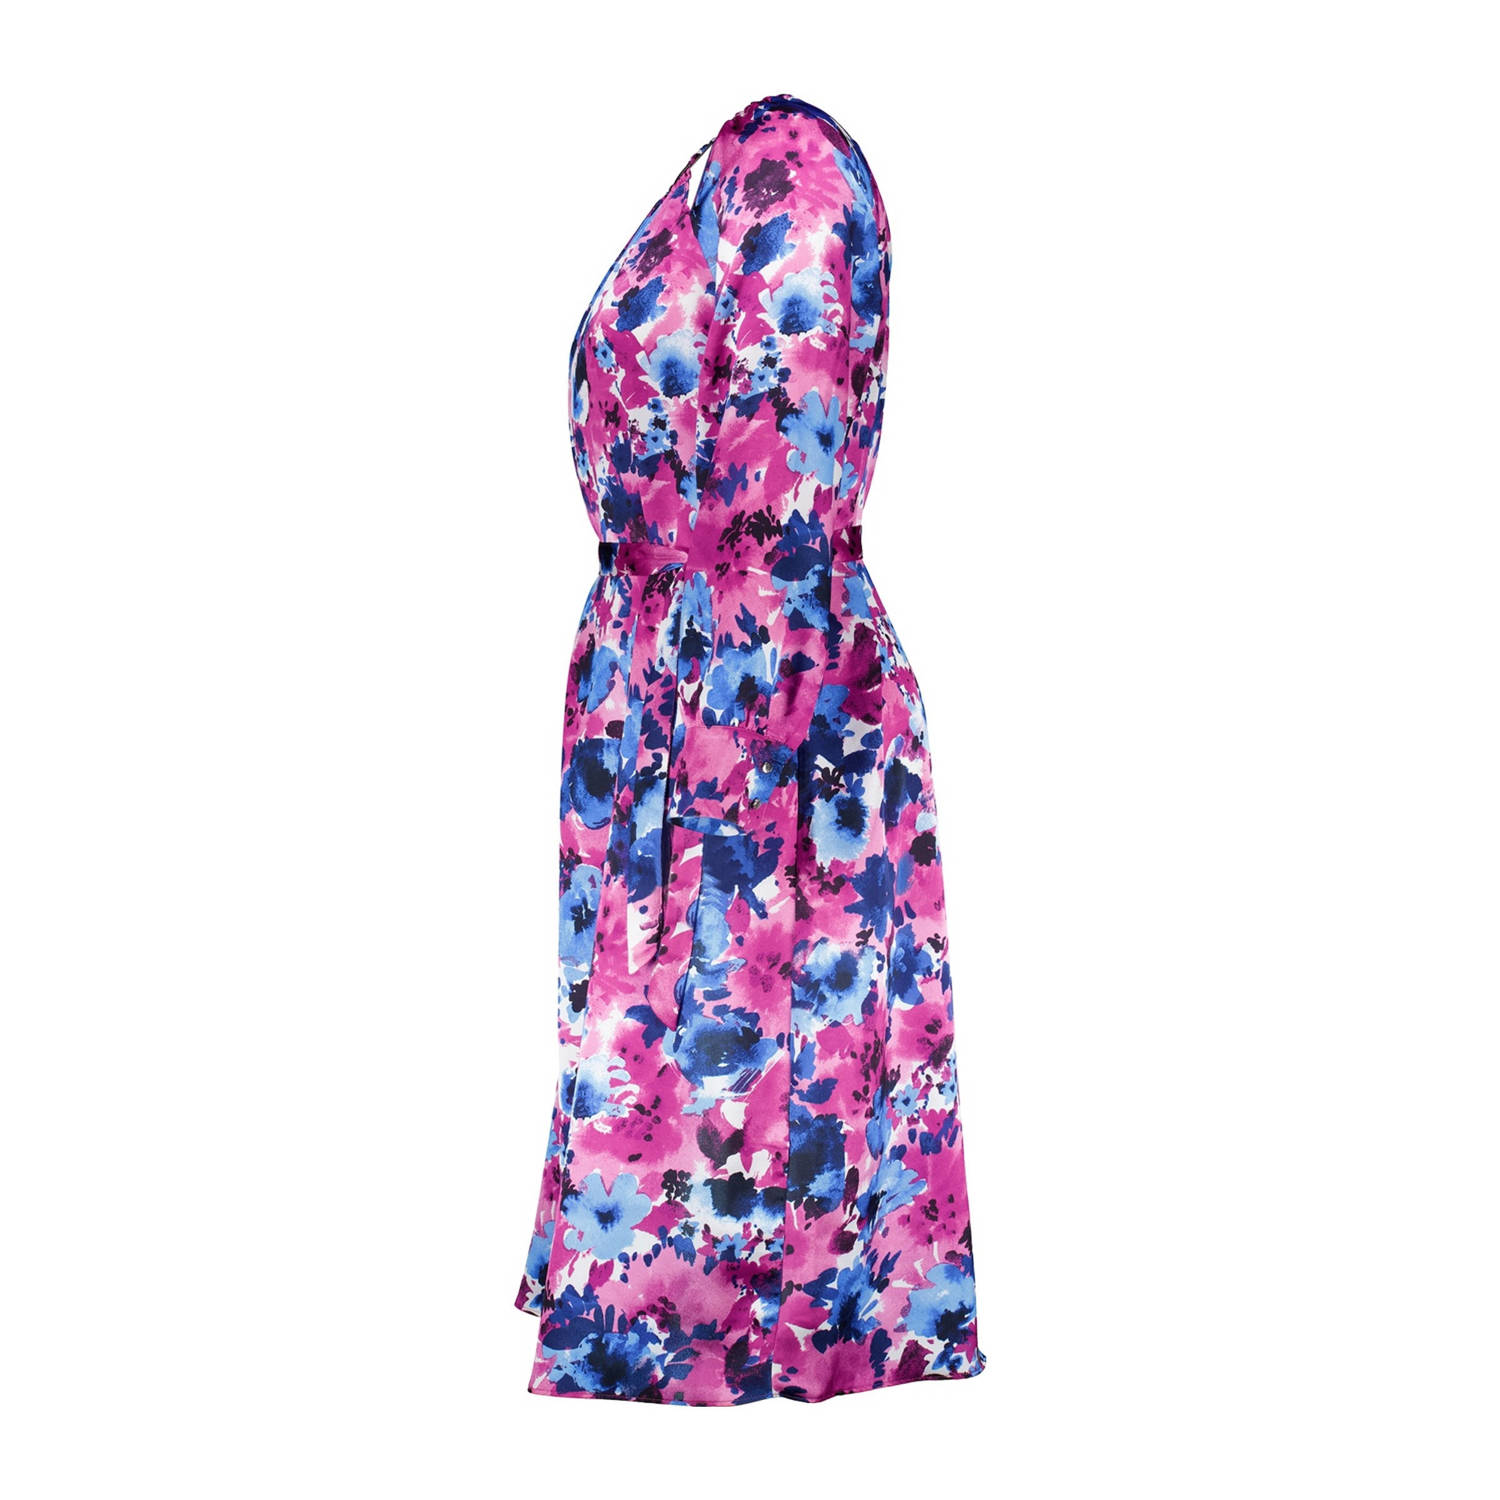 MS Mode A-lijn jurk met all over print en open detail paars blauw ecru